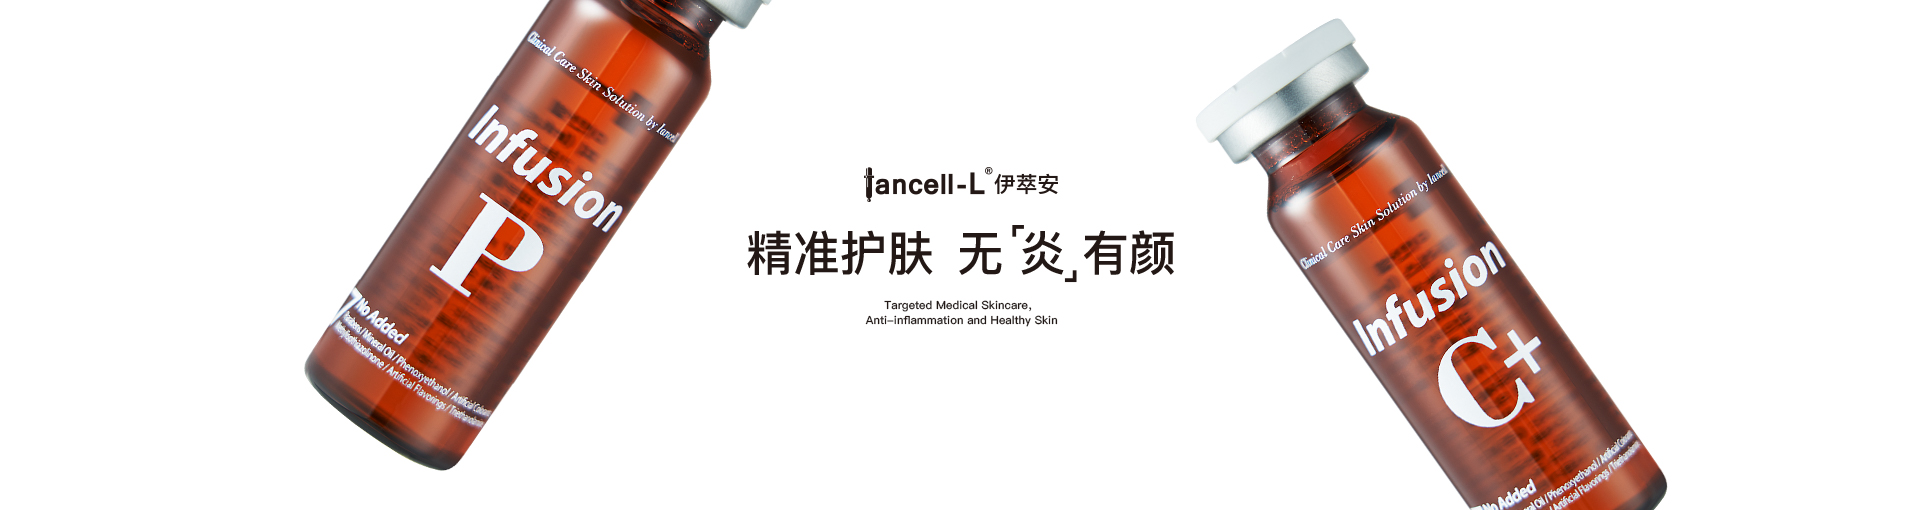 Iancell-L°伊萃安 精准护肤 无 炎有颜